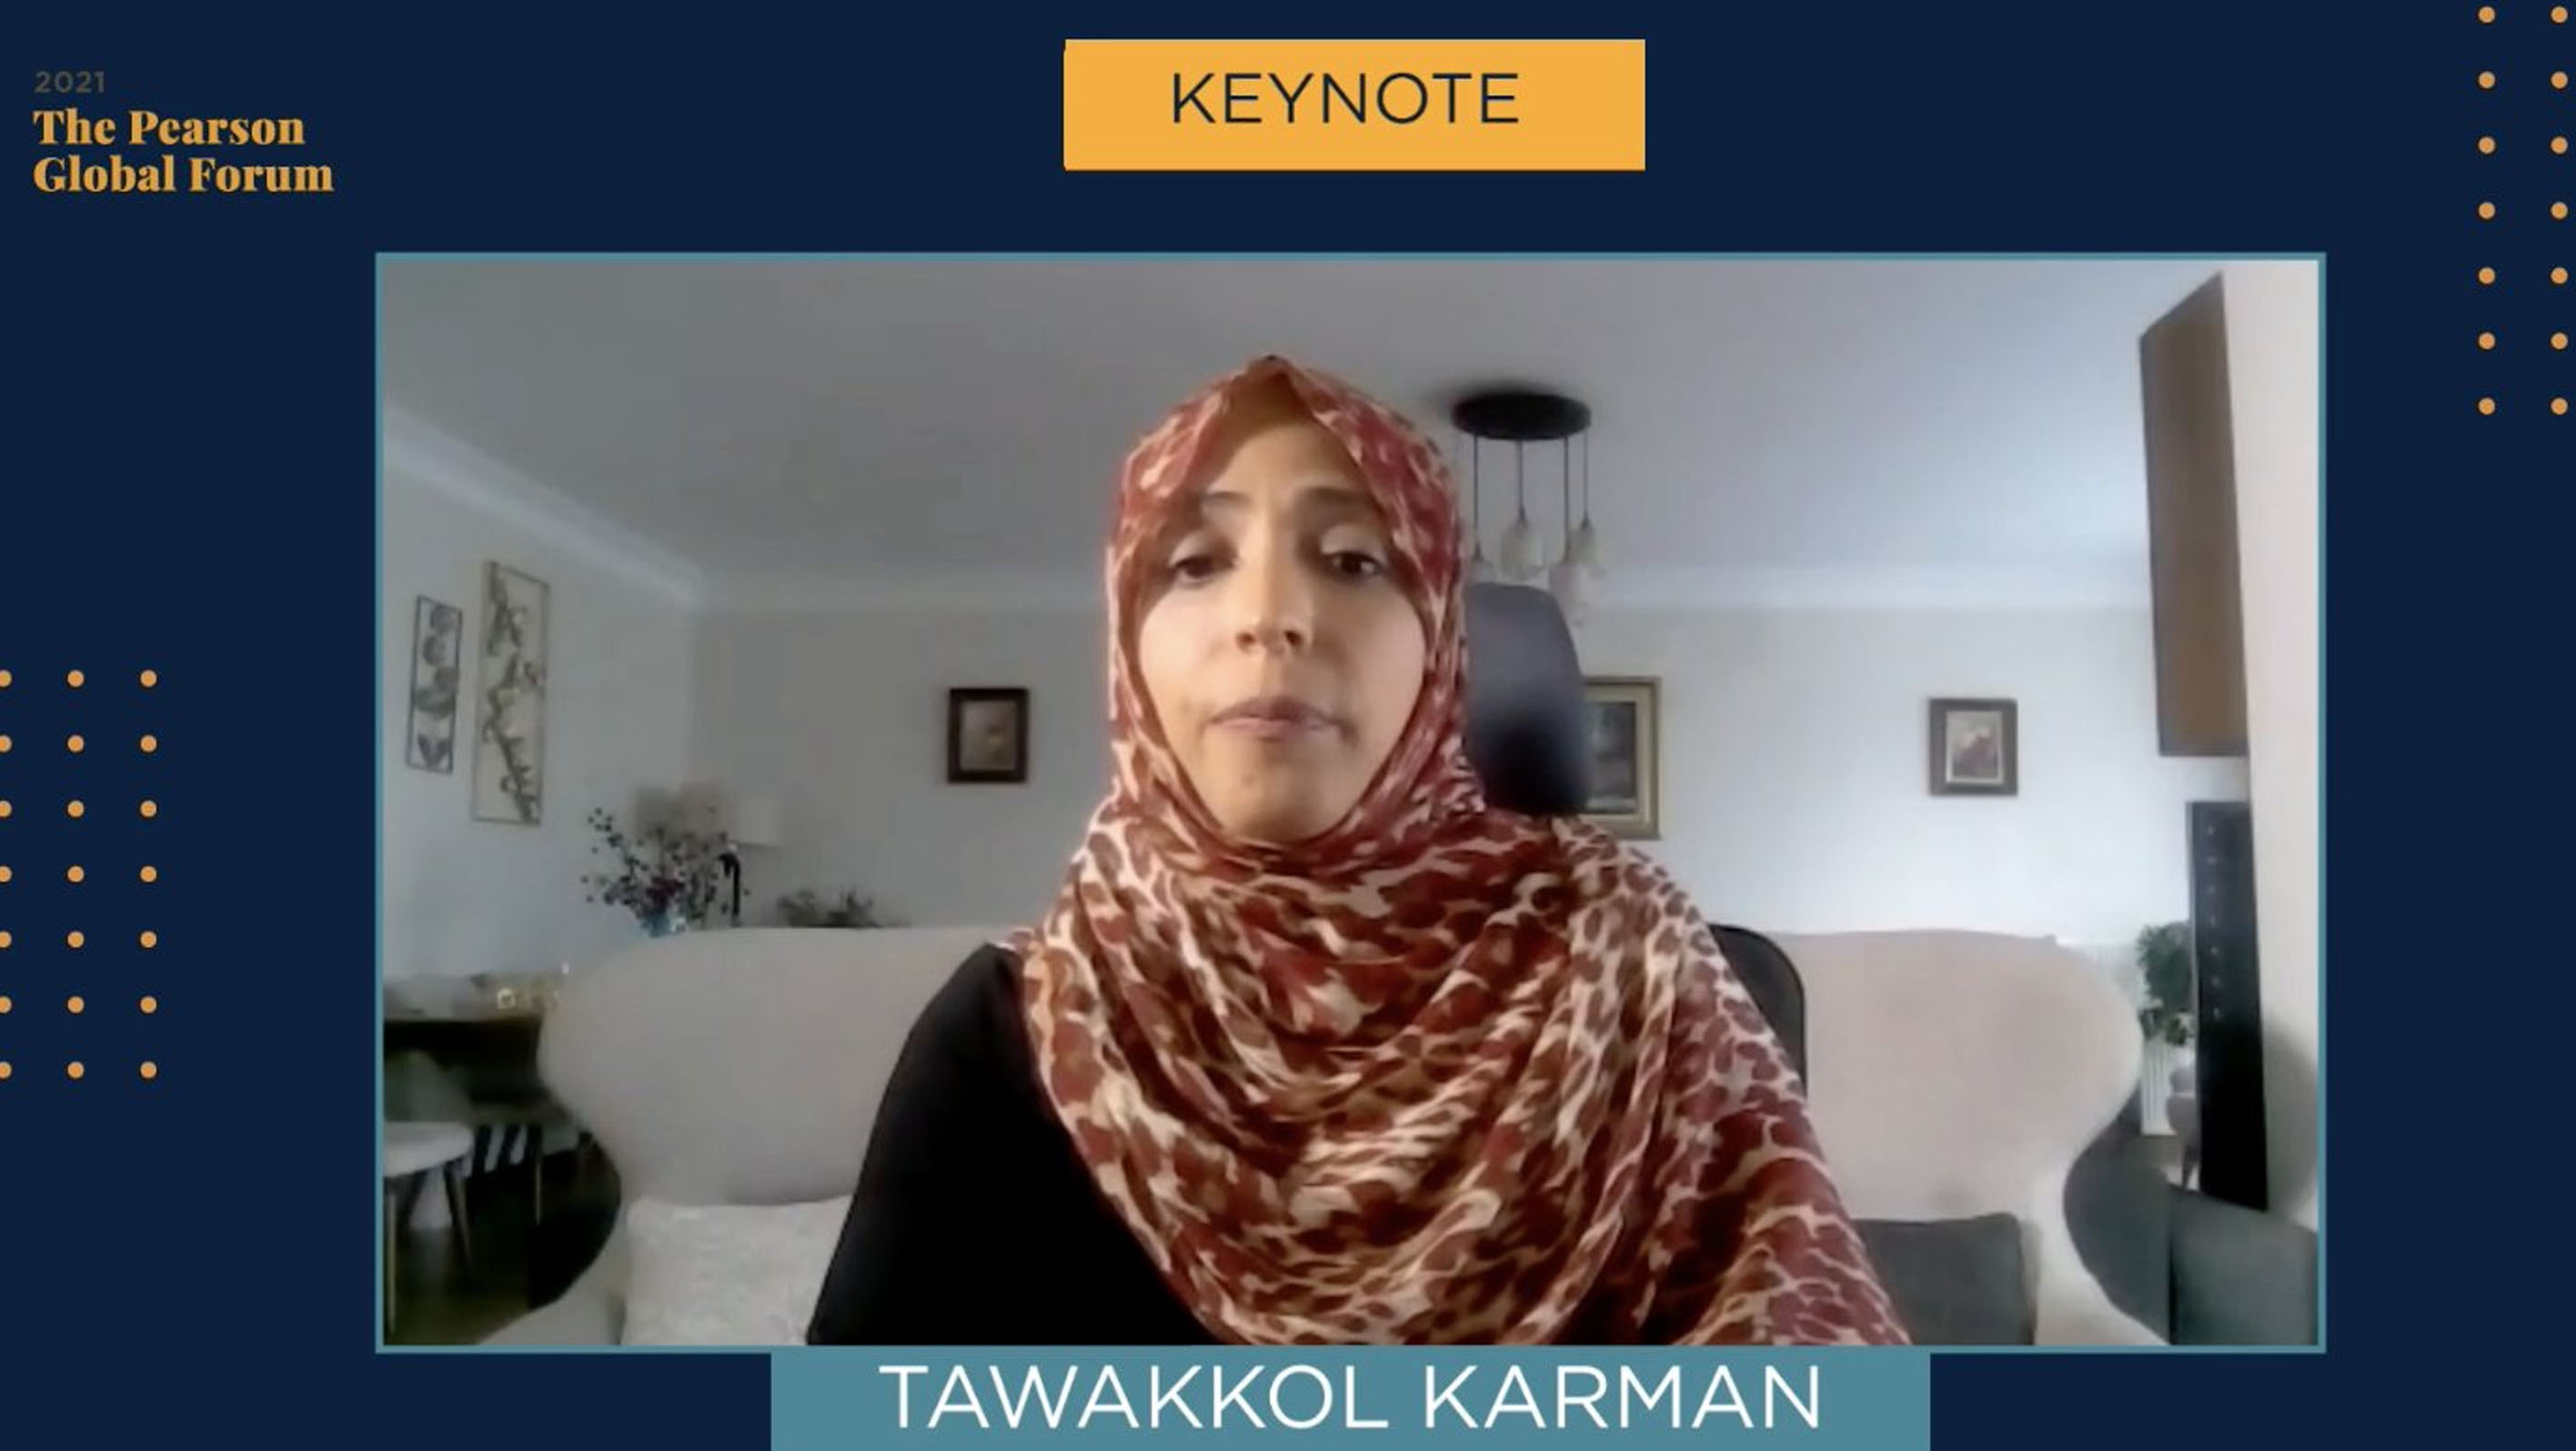 Speech by Mrs. Karman on Yemen at University of Chicago